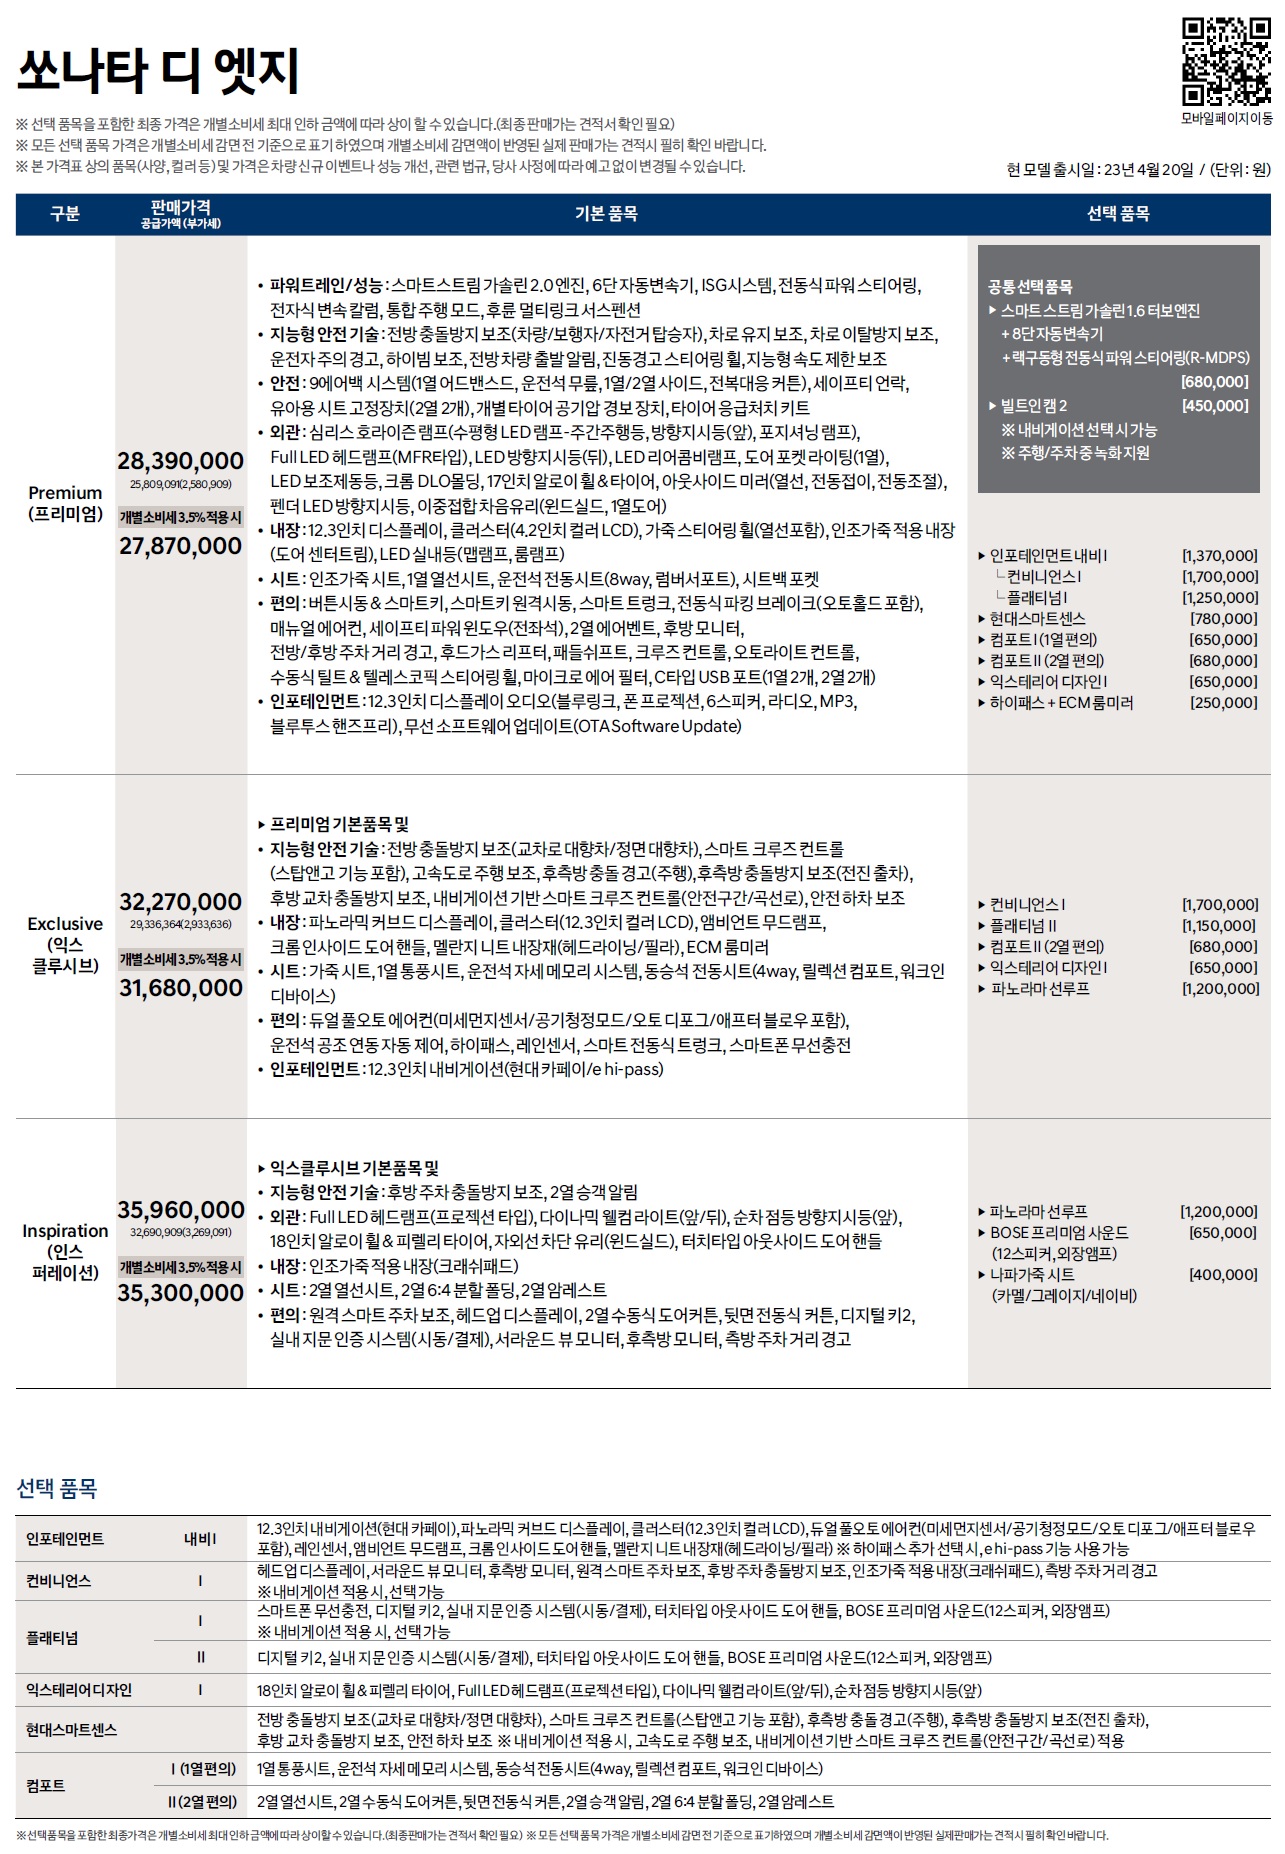 쏘나타 가격표 - 2023년 04월 (쏘나타 디엣지) -1.jpg